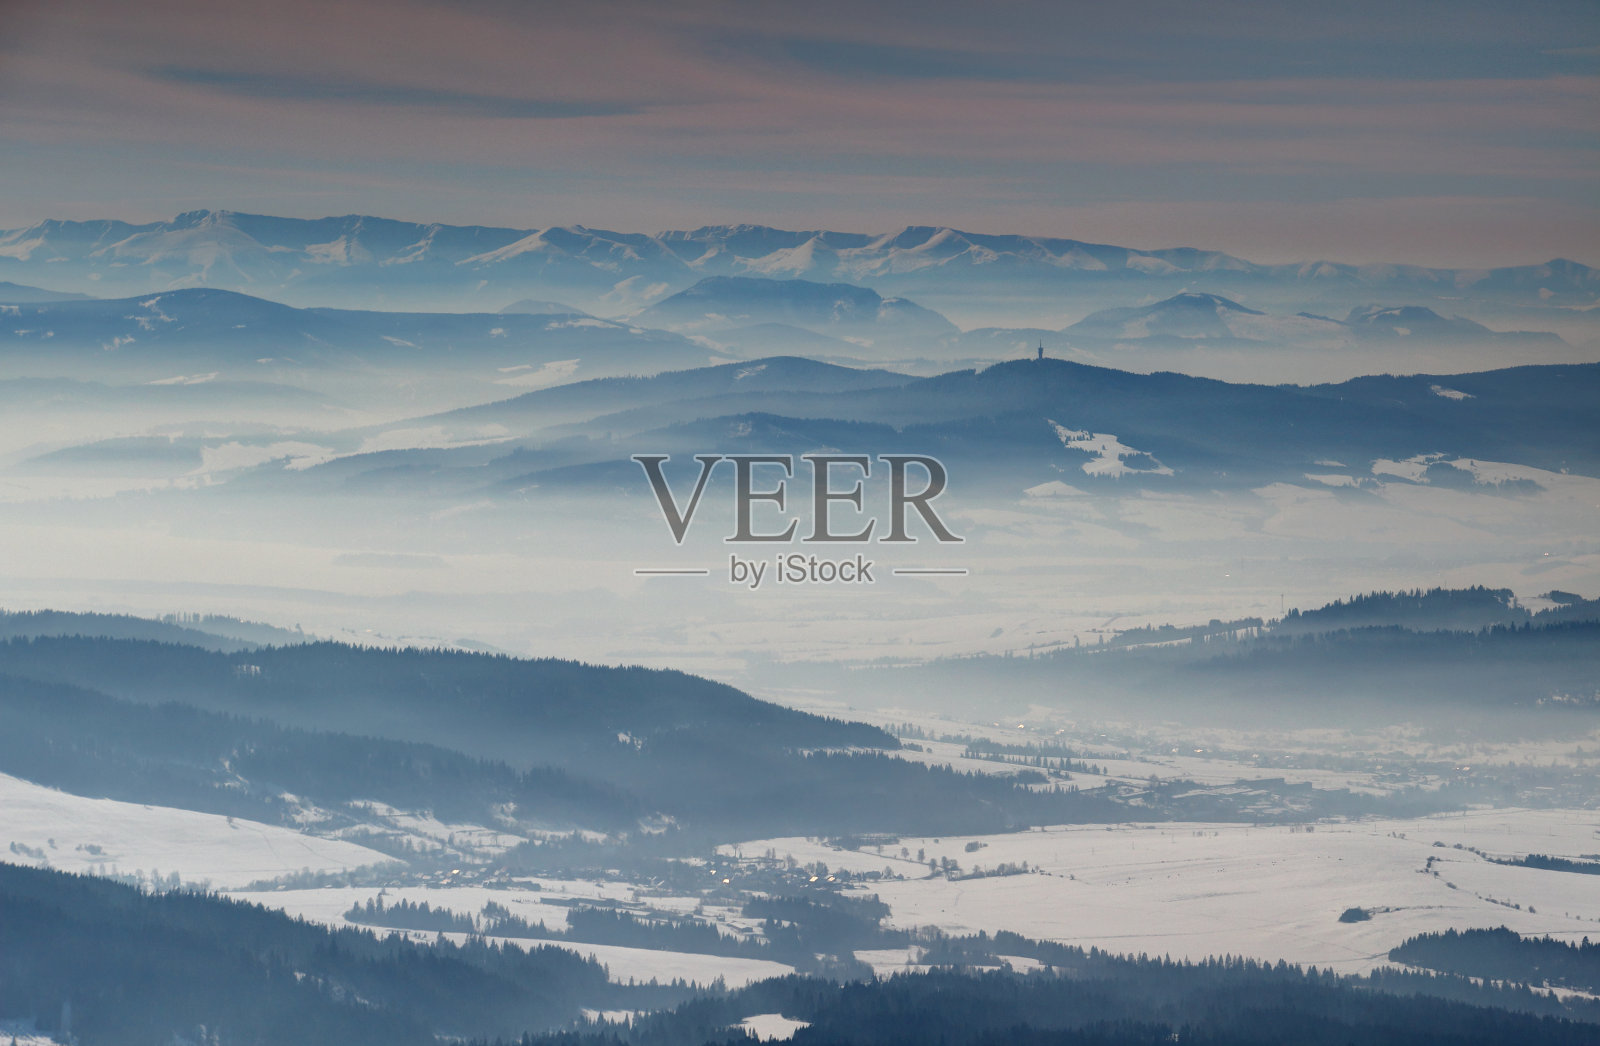 晴朗的冬季景色与蓝色的山脊和朦胧的山谷斯洛伐克照片摄影图片